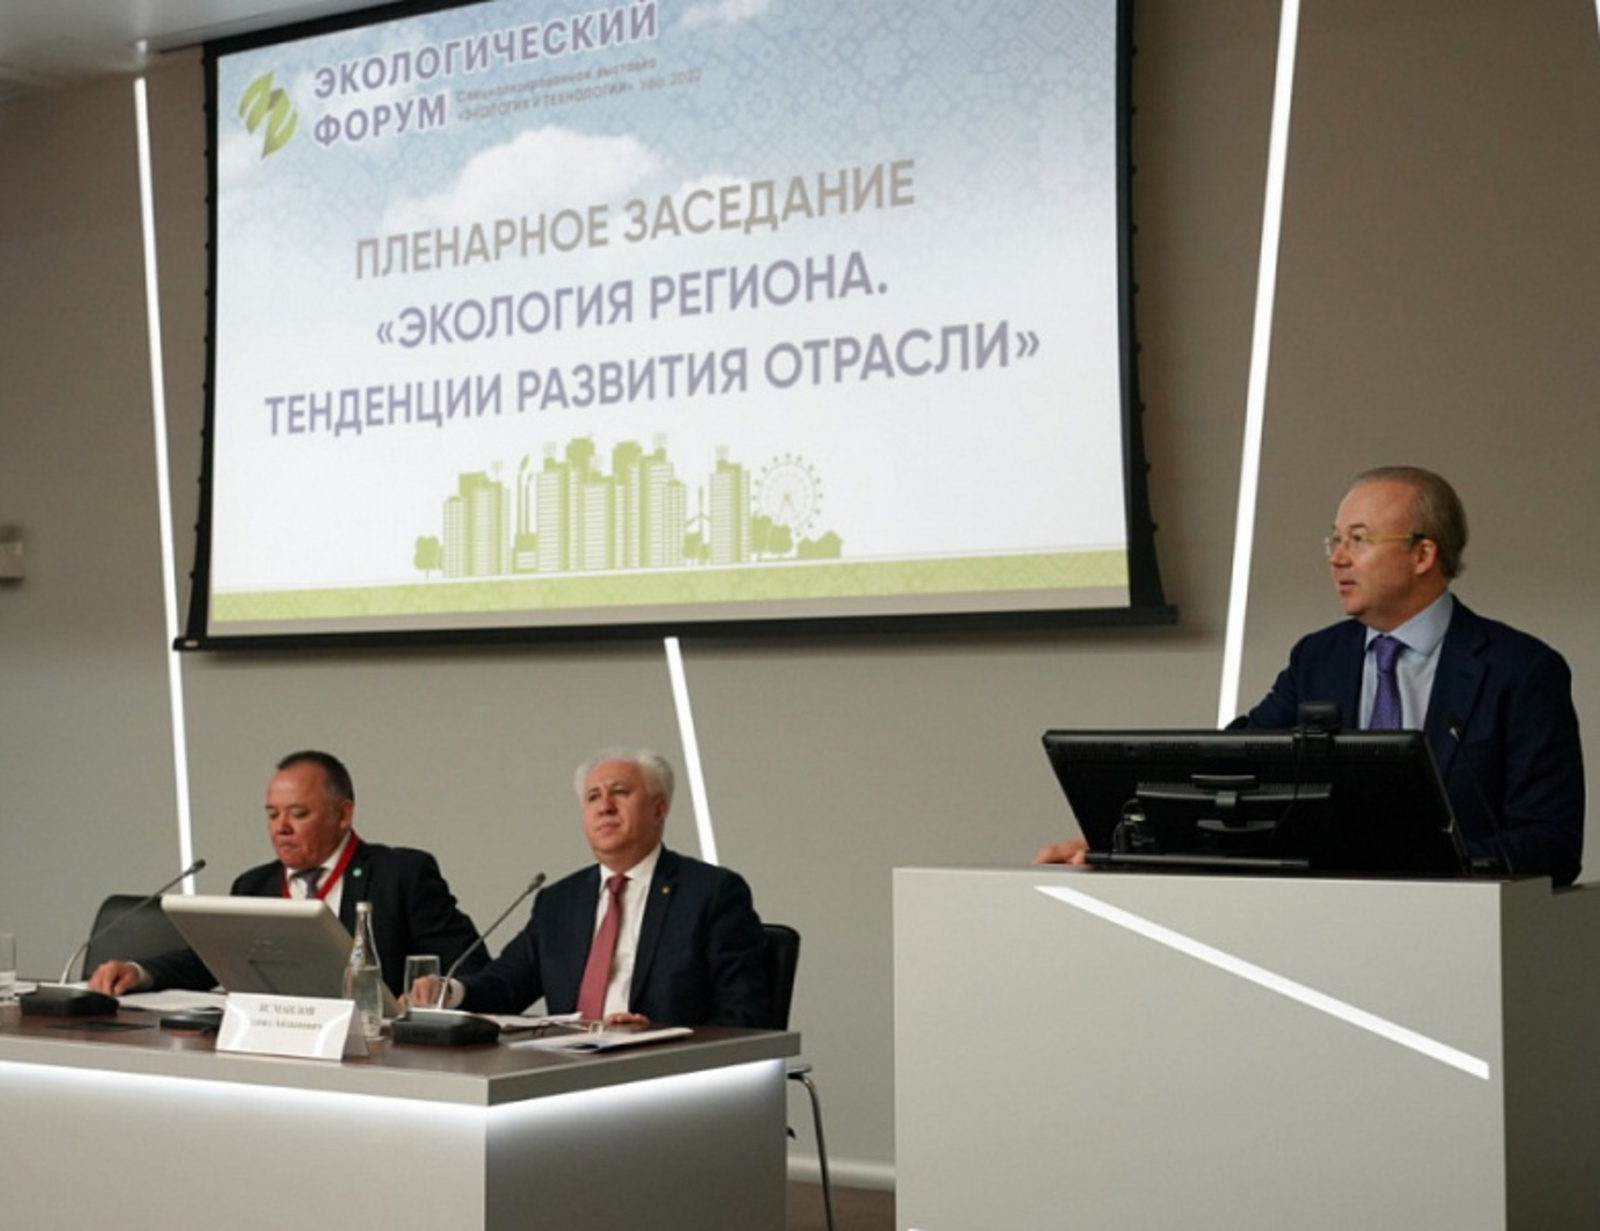 Андрей Назаров принял участие в пленарном заседании «Экология региона. Тенденции развития отрасли»